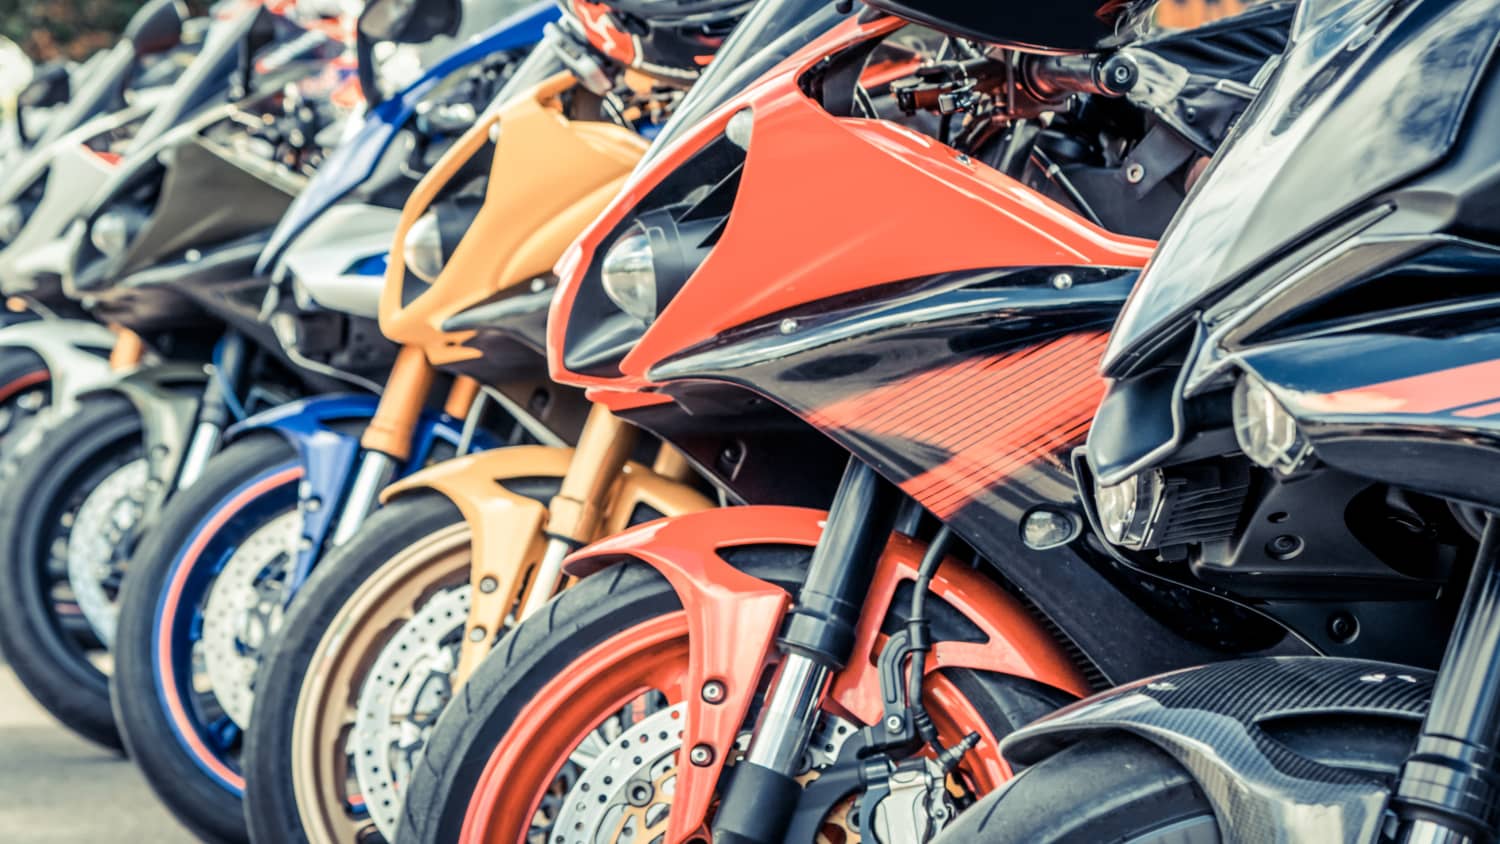 Motorrad gebraucht kaufen: Darauf sollten Sie achten